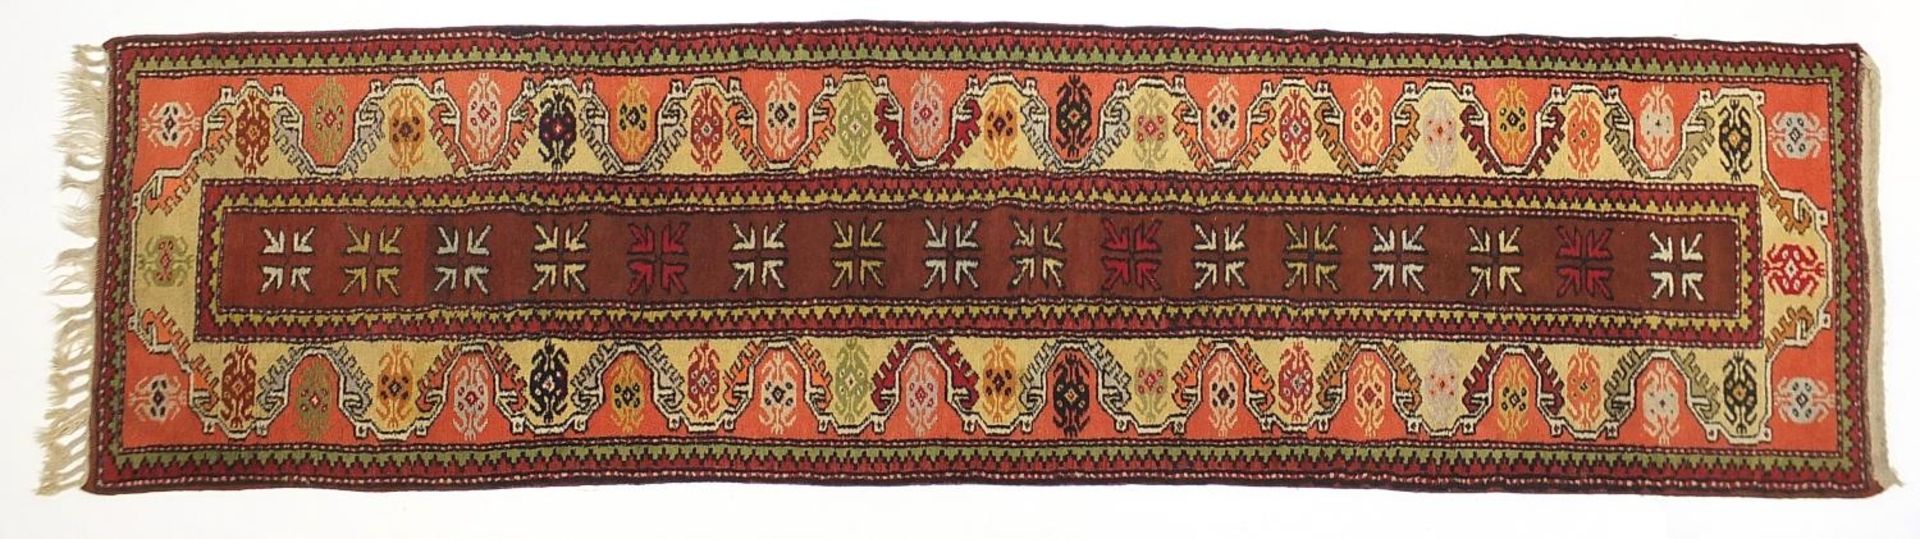 Rectangular Middle Eastern carpet runner having and all over geometric design, 275cm x 75cm